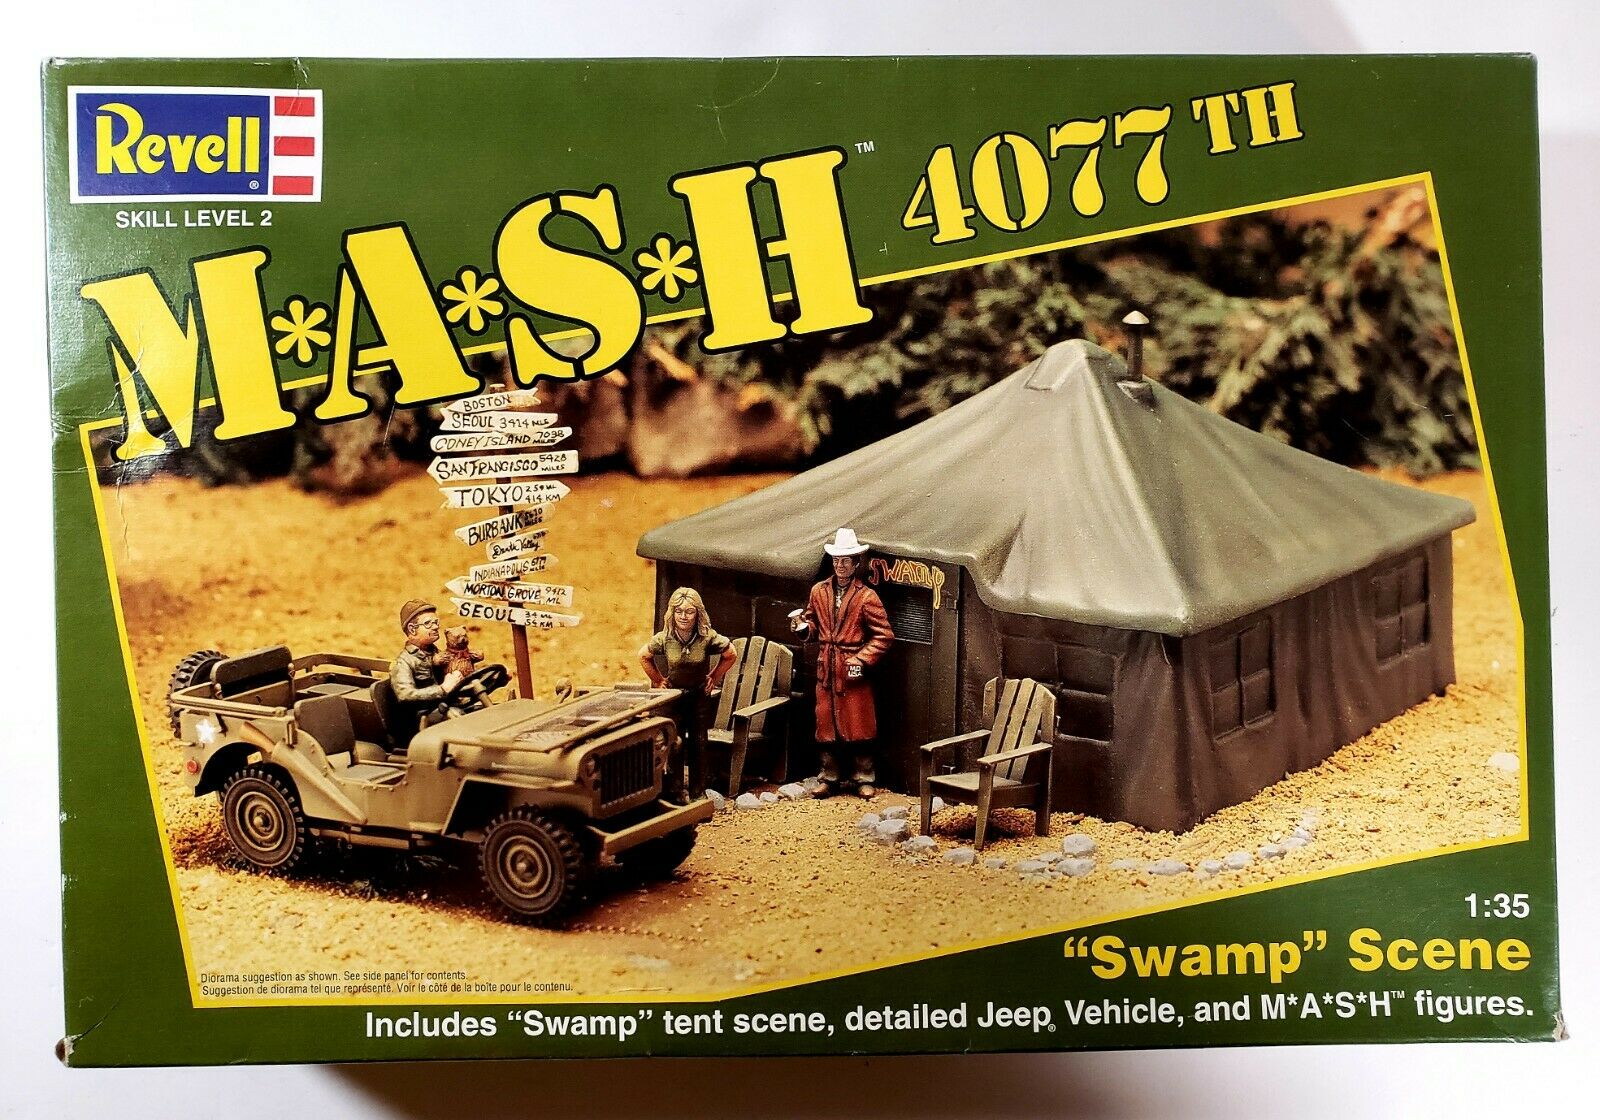 1994 Revell Mash 4077th - Swamp Scene 1:35 Scale Model Kit New - Open Box